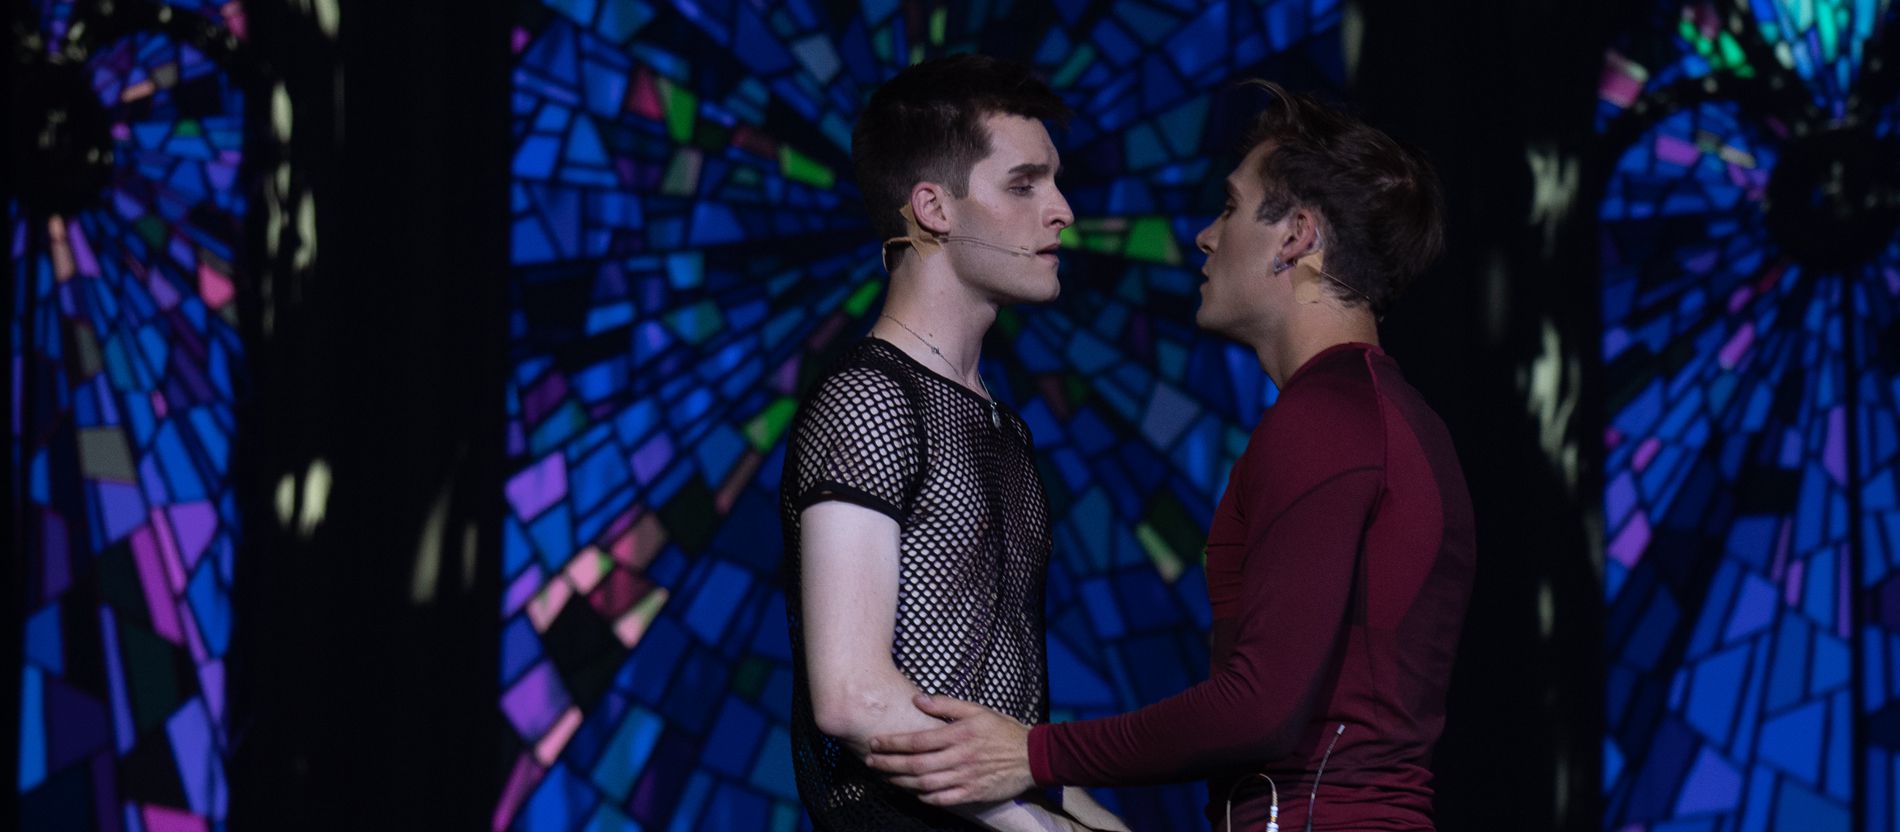 Liturgie und Queerness: Musical "Bare" thematisiert Glaube und Kirche